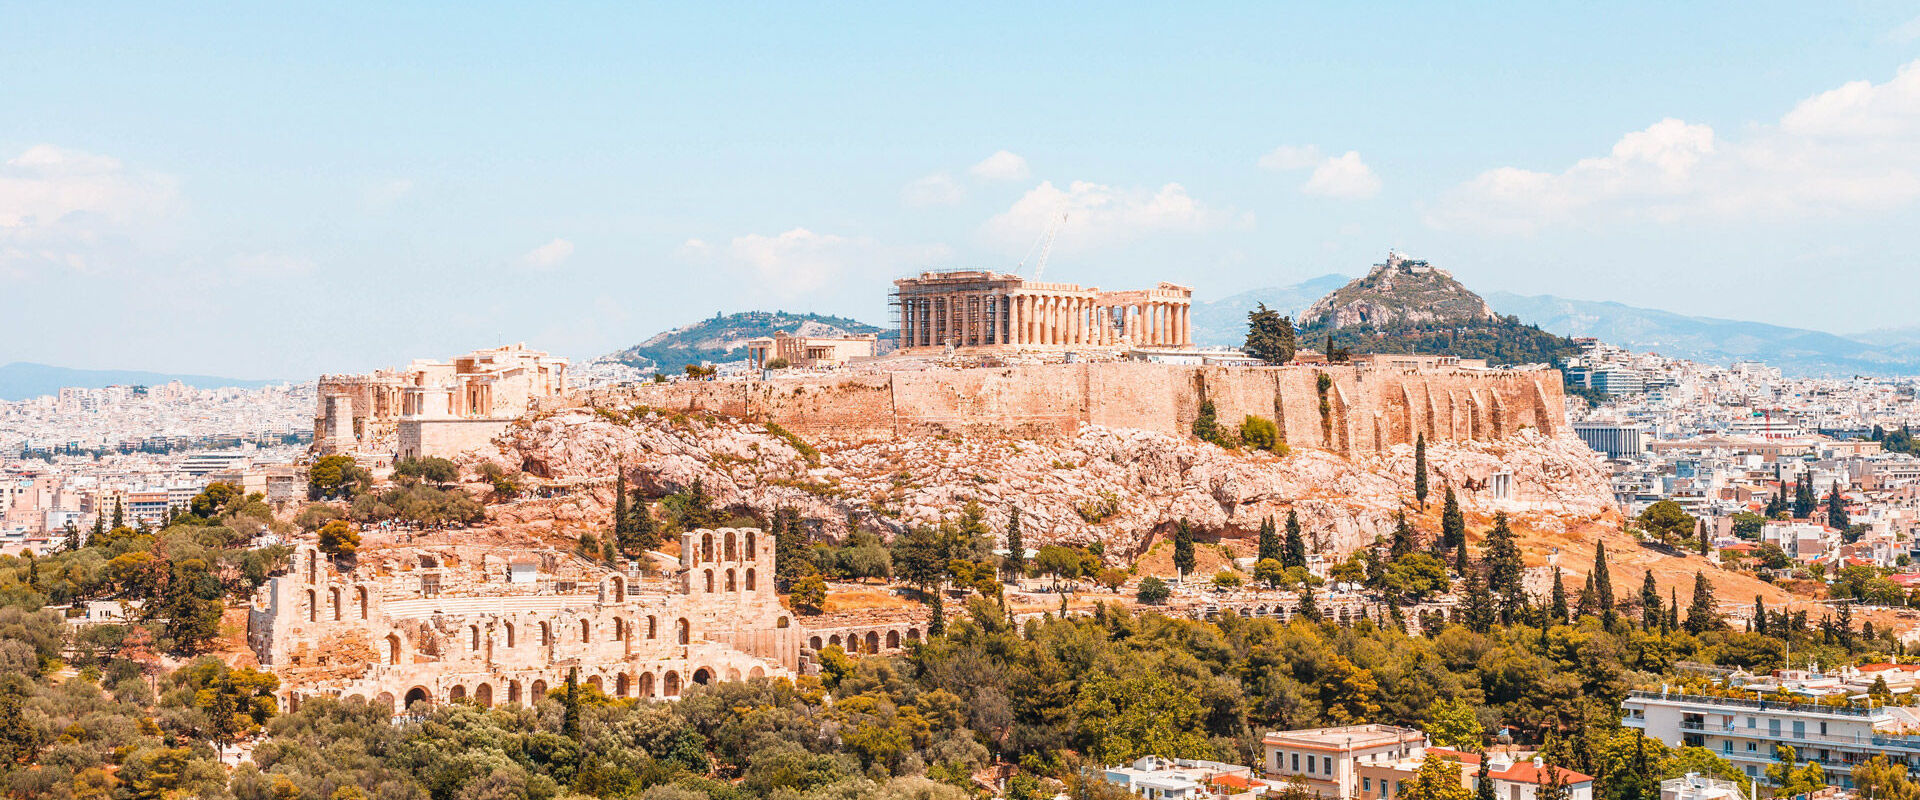 La ricchezza culturale di Atene in una passeggiata | Cultura | Discover Greece